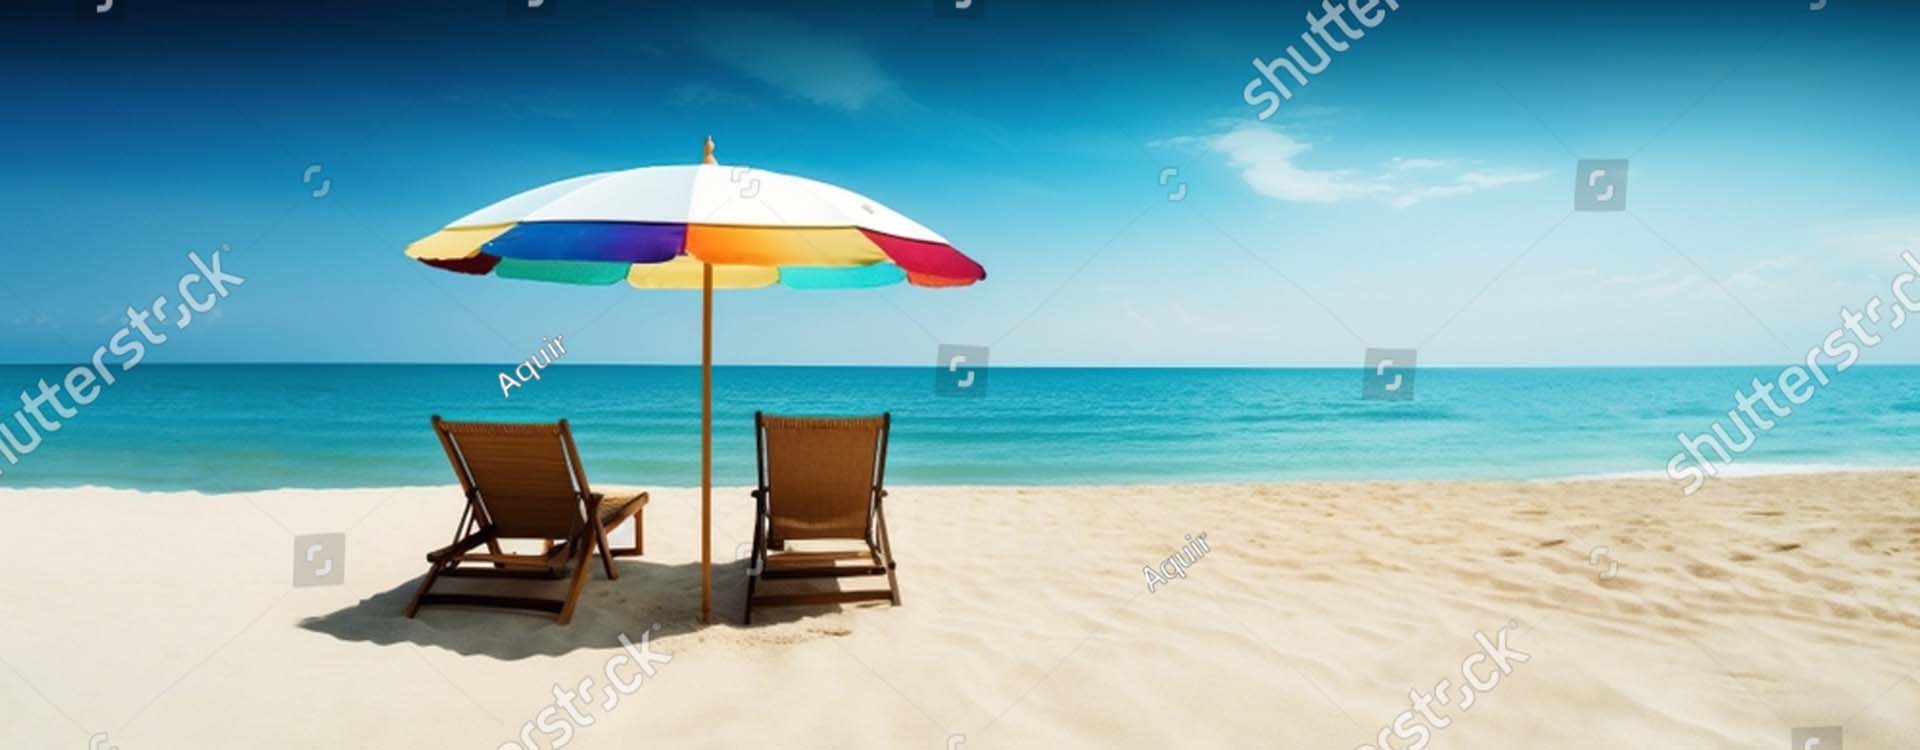 beach chairs under a beach umbrella